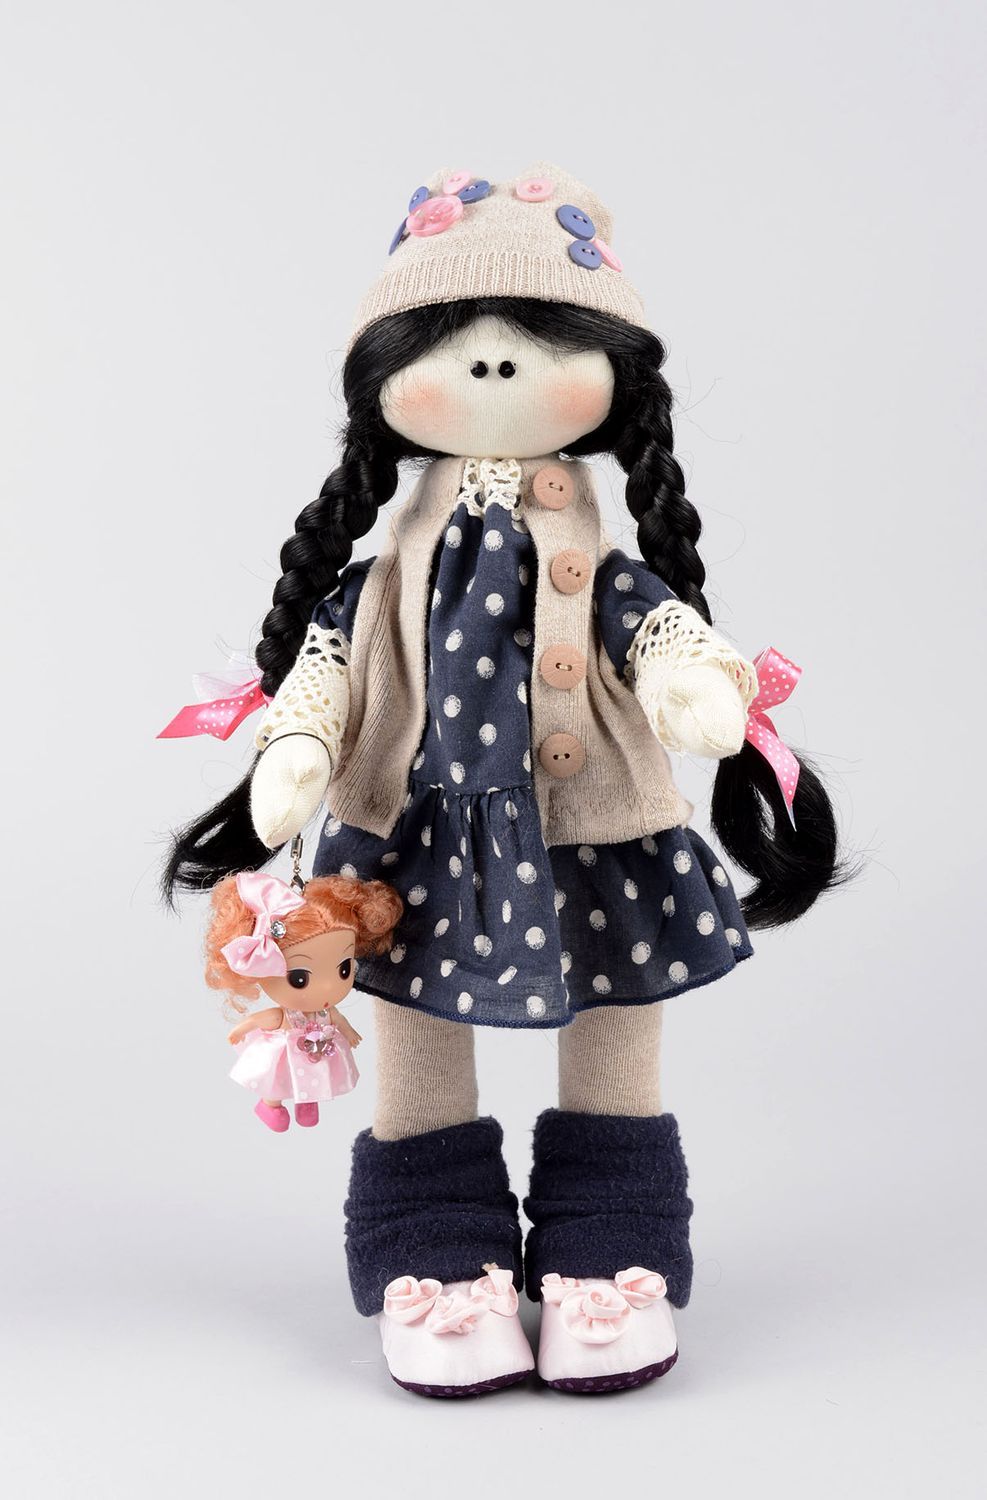 Kinder Spielzeug handmade Kinder Puppe originell weiche Kuscheltiere schön foto 1